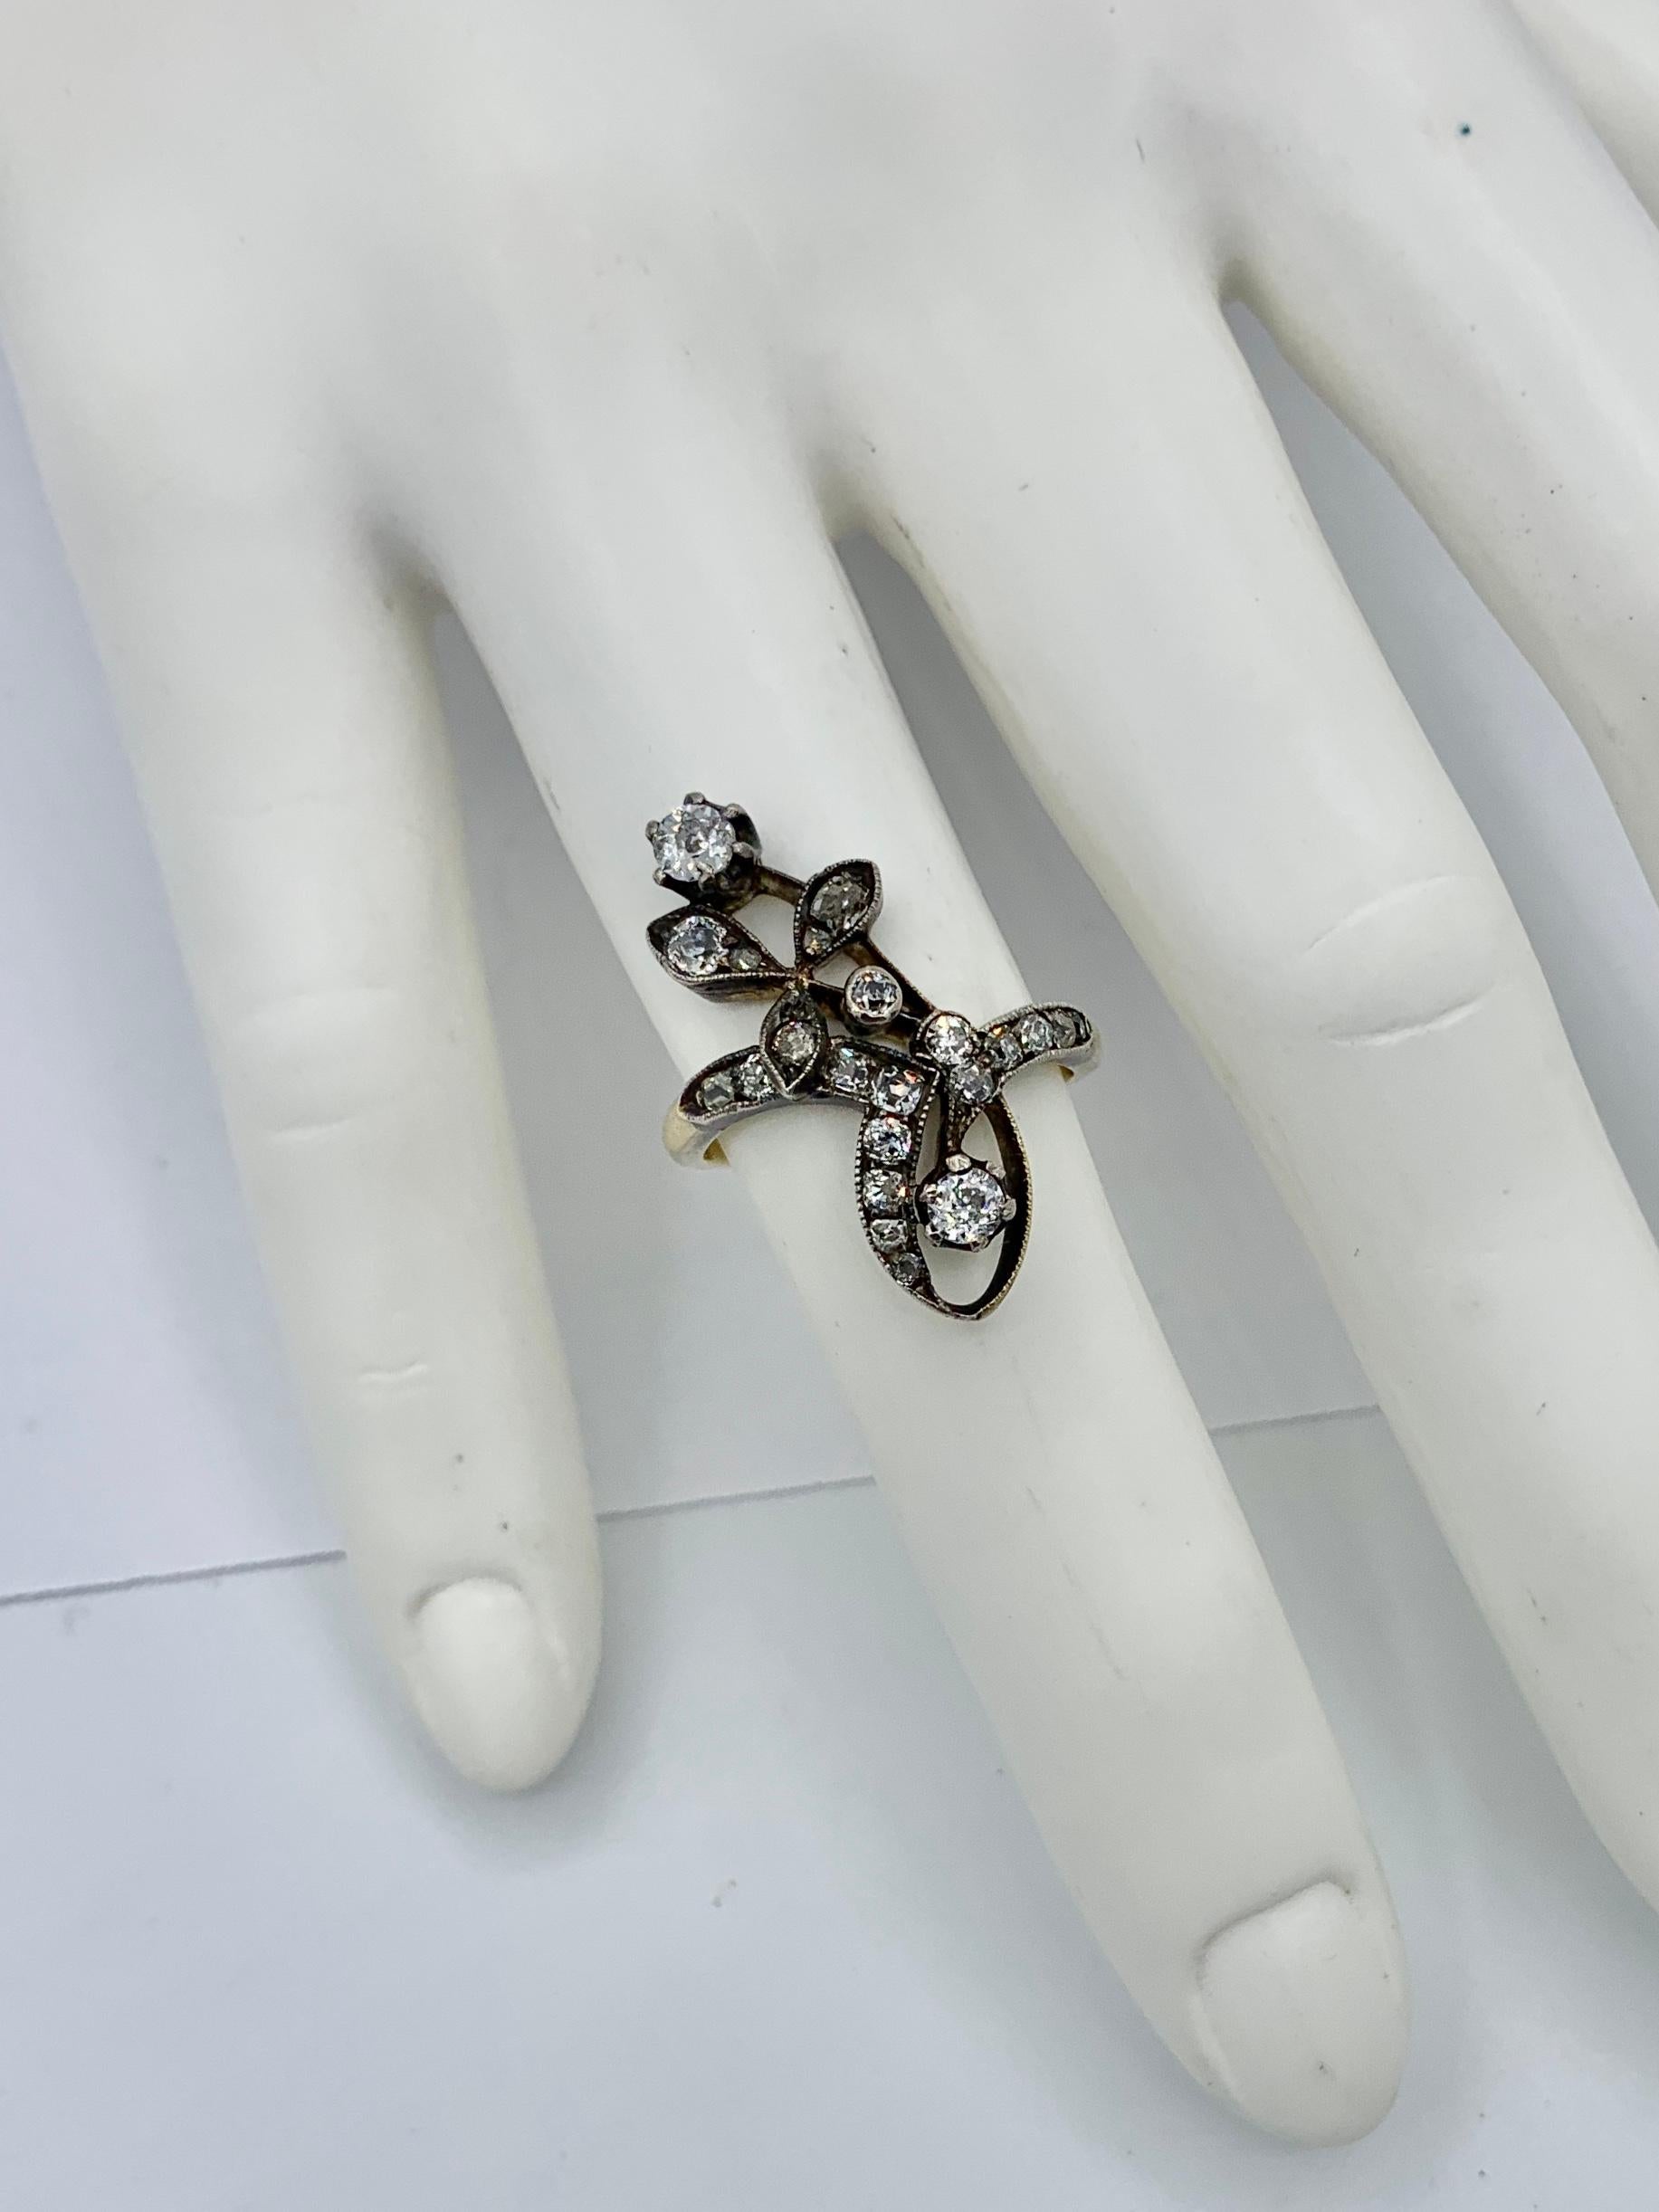 Russian Art Nouveau Old Mine Cut Diamond Flower Ring 14 Karat Gold Engagement For Sale 1